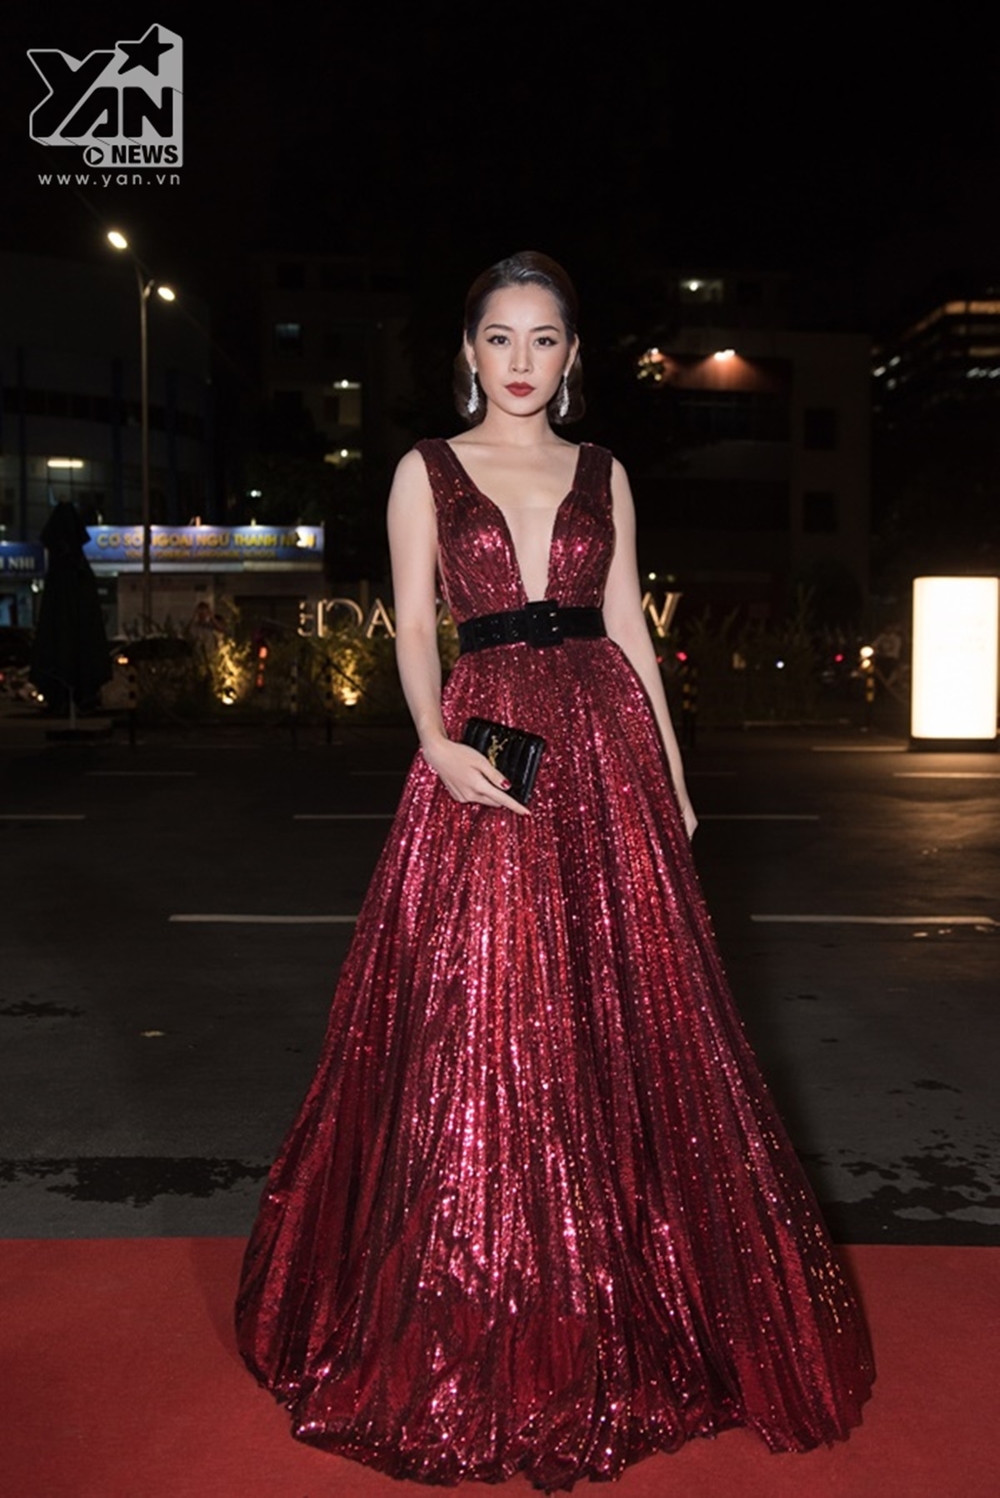 
Đến tham dự sự kiện, nữ ca sĩ Chi Pu khoe vẻ quyến rũ "khó cưỡng" trong thiết kế đầm xẻ ngực sâu "hun hút" màu đỏ cực nổi bật.